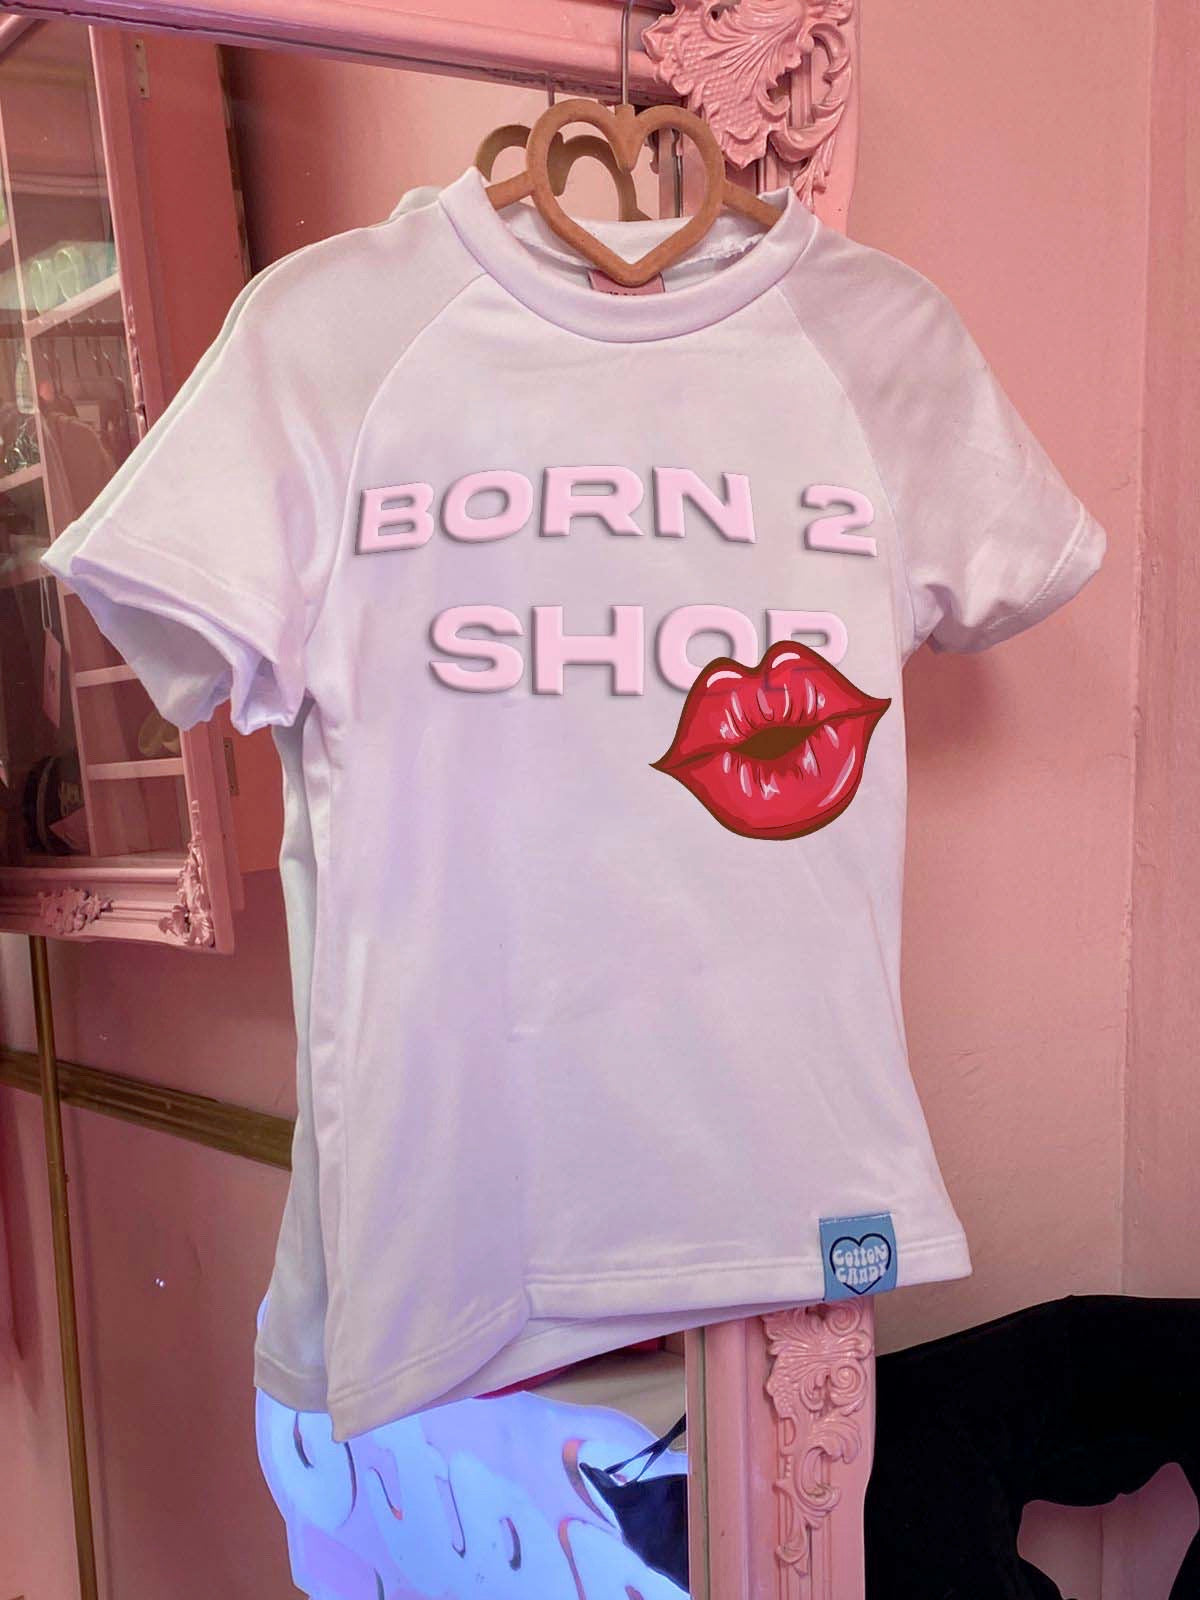 Born 2 shop top